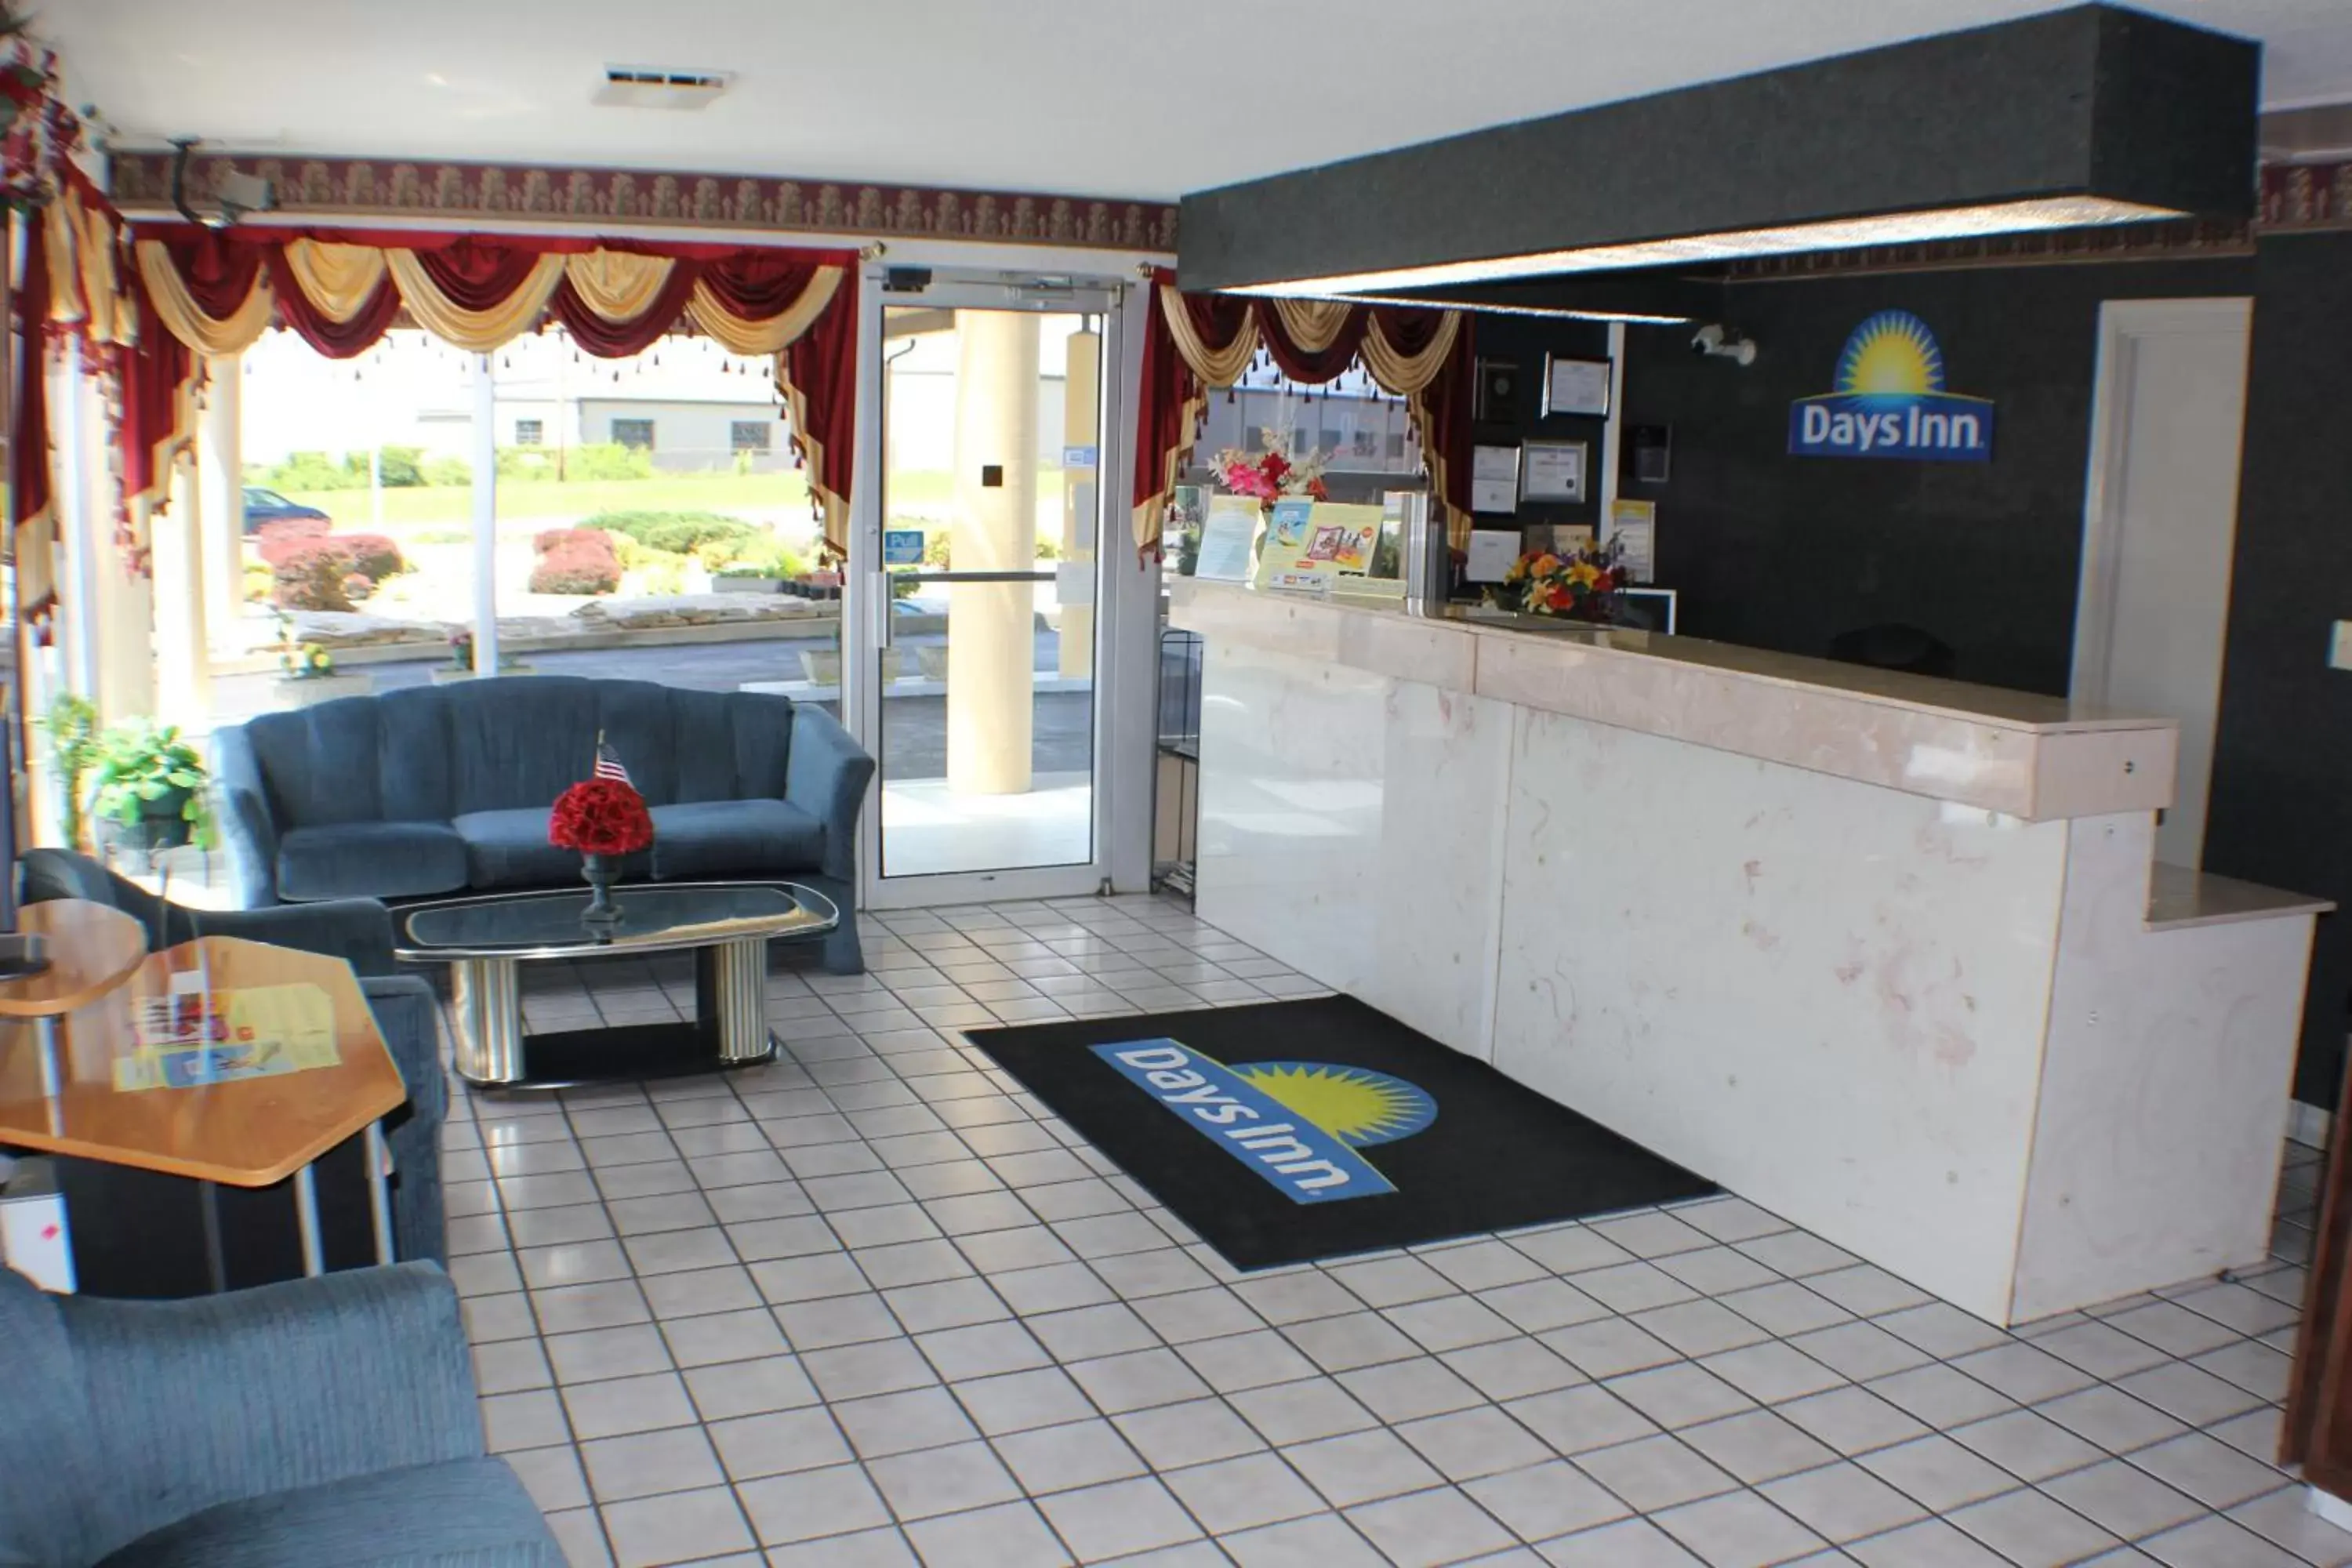 Lobby or reception, Lobby/Reception in Days Inn by Wyndham Greeneville